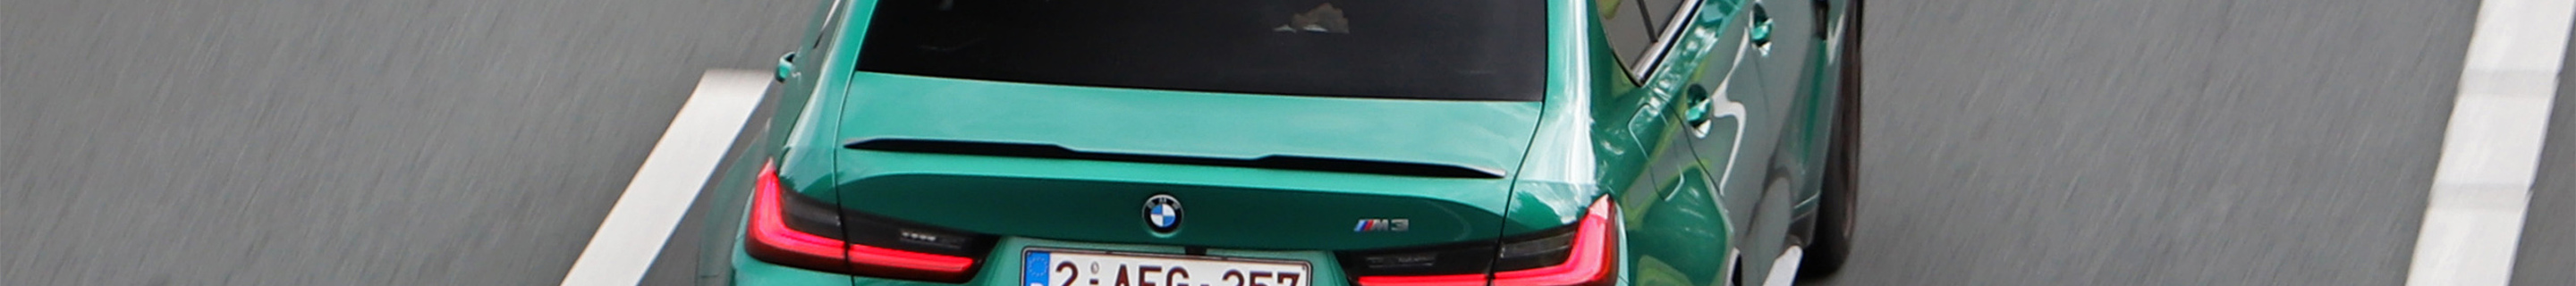 BMW M3 G80 Sedan